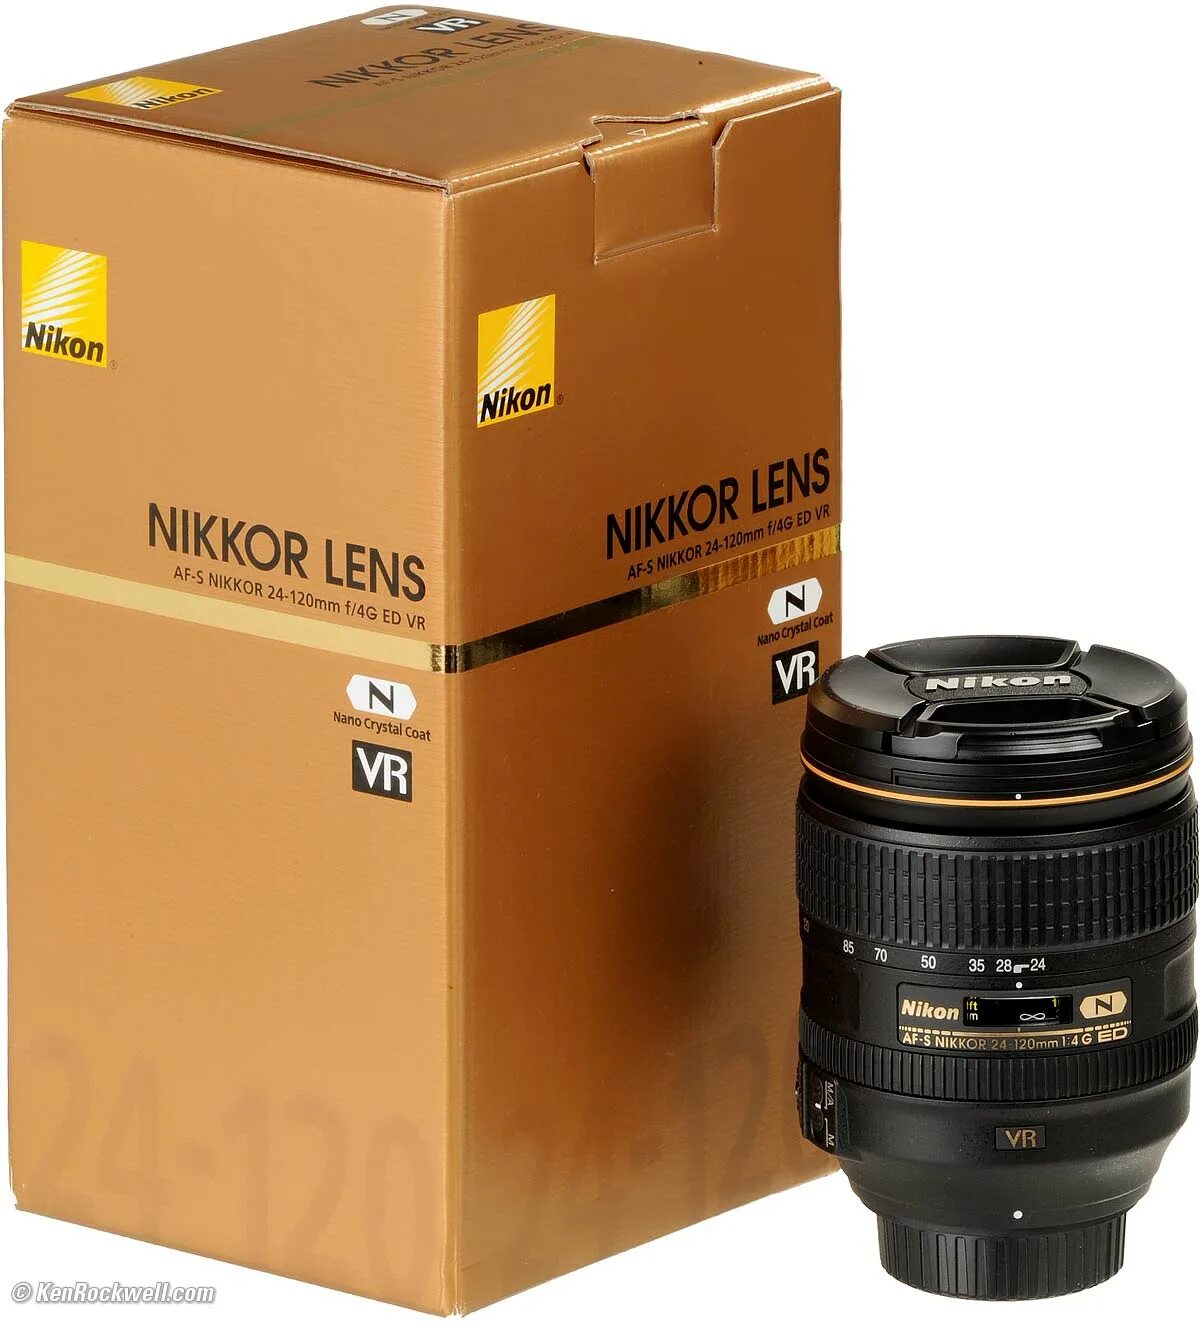 Nikon 24 120mm ed vr. Af-s Nikkor 24-120mm. Nikon 24-120mm f/4g. Nikkor 24-120mm f/4g ed VR.